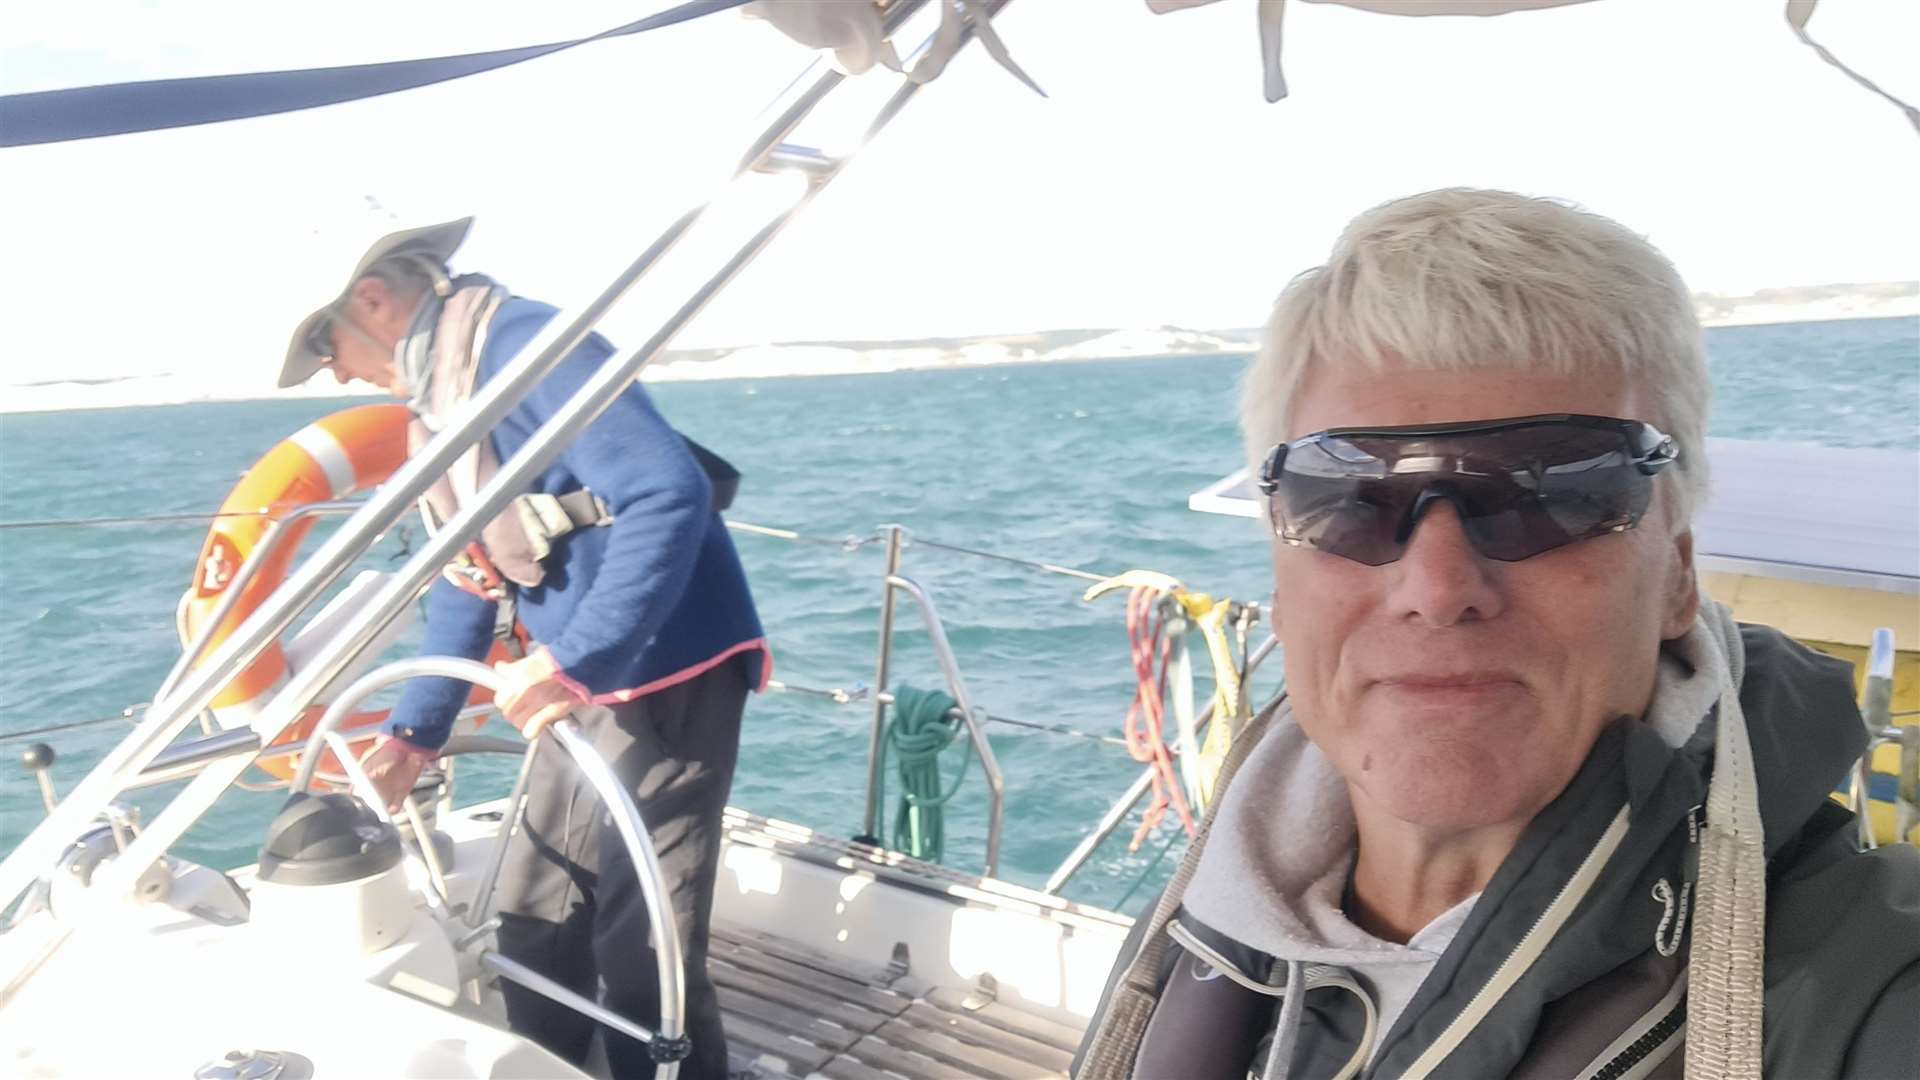 Our reporter Gerry Warren onboard the catamaran